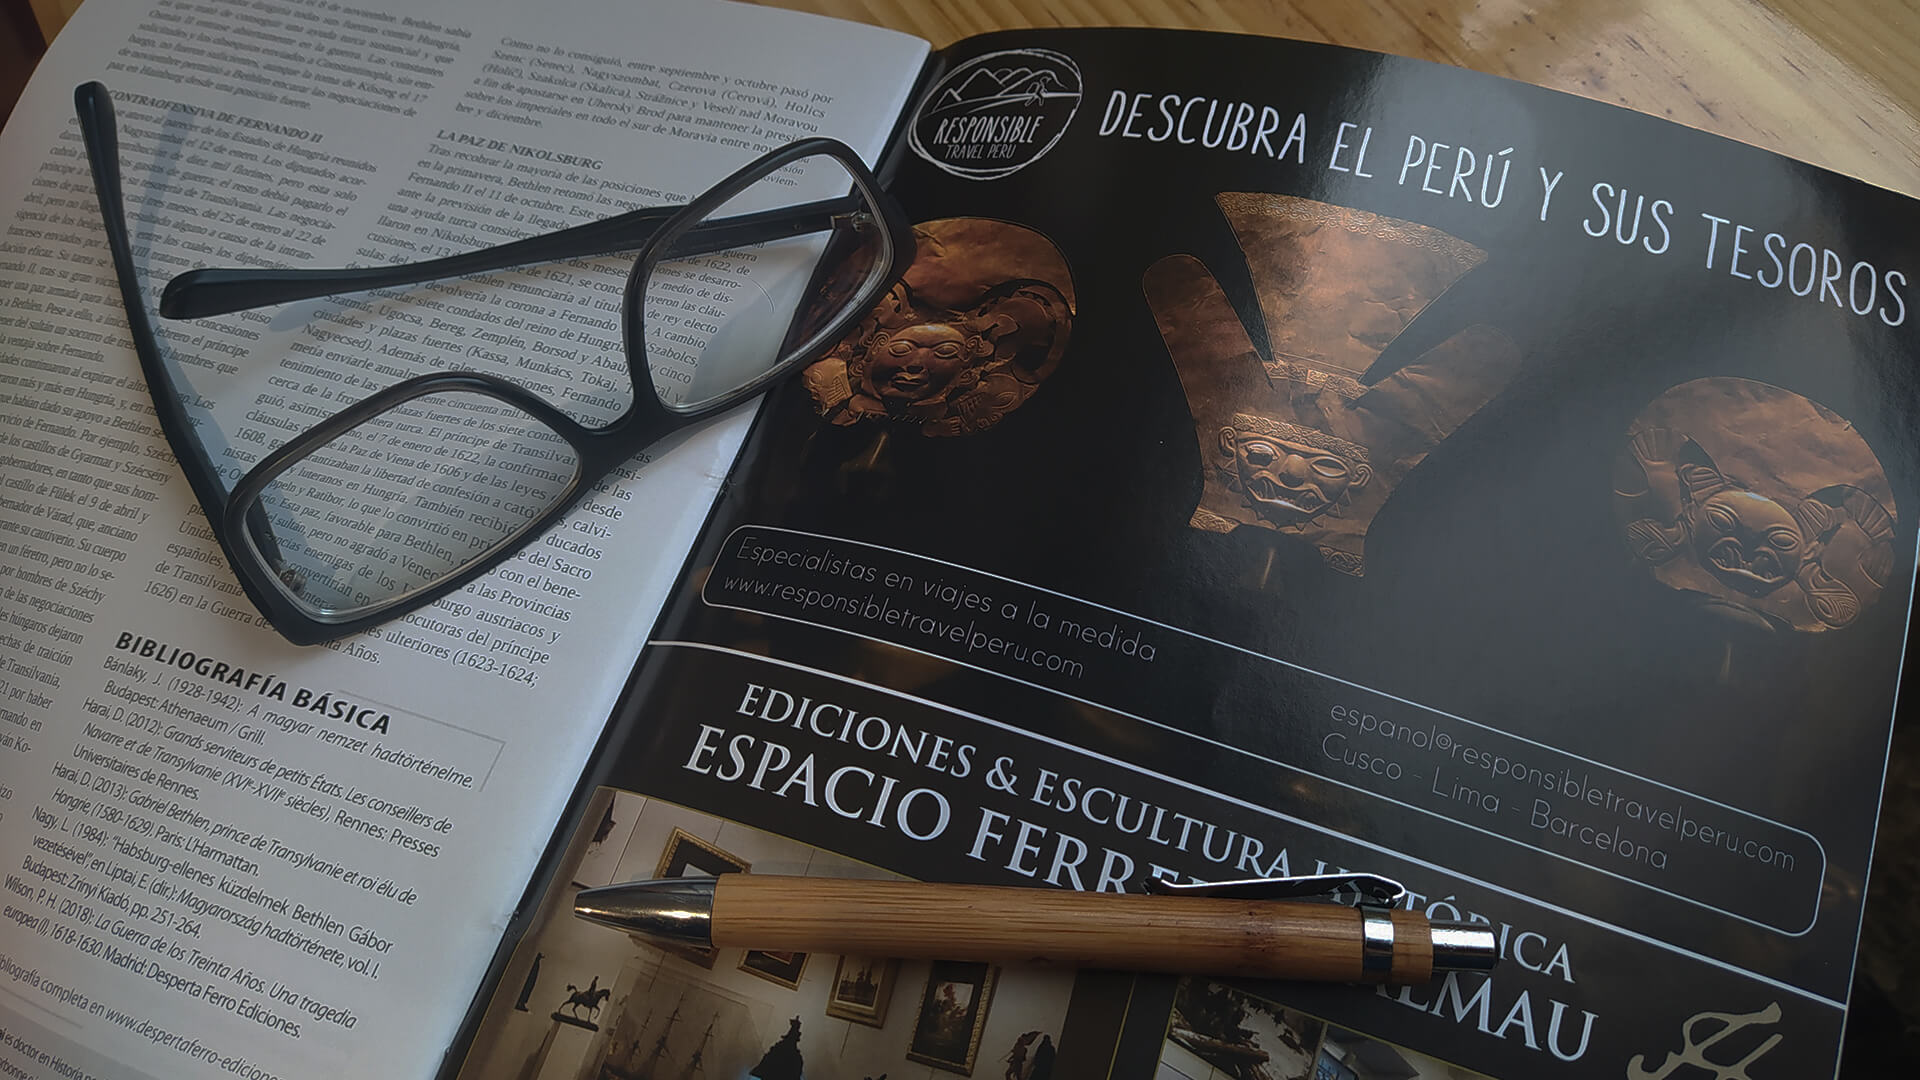 Respons advertising on magazine in Spanish language | RESPONSible Travel Peru